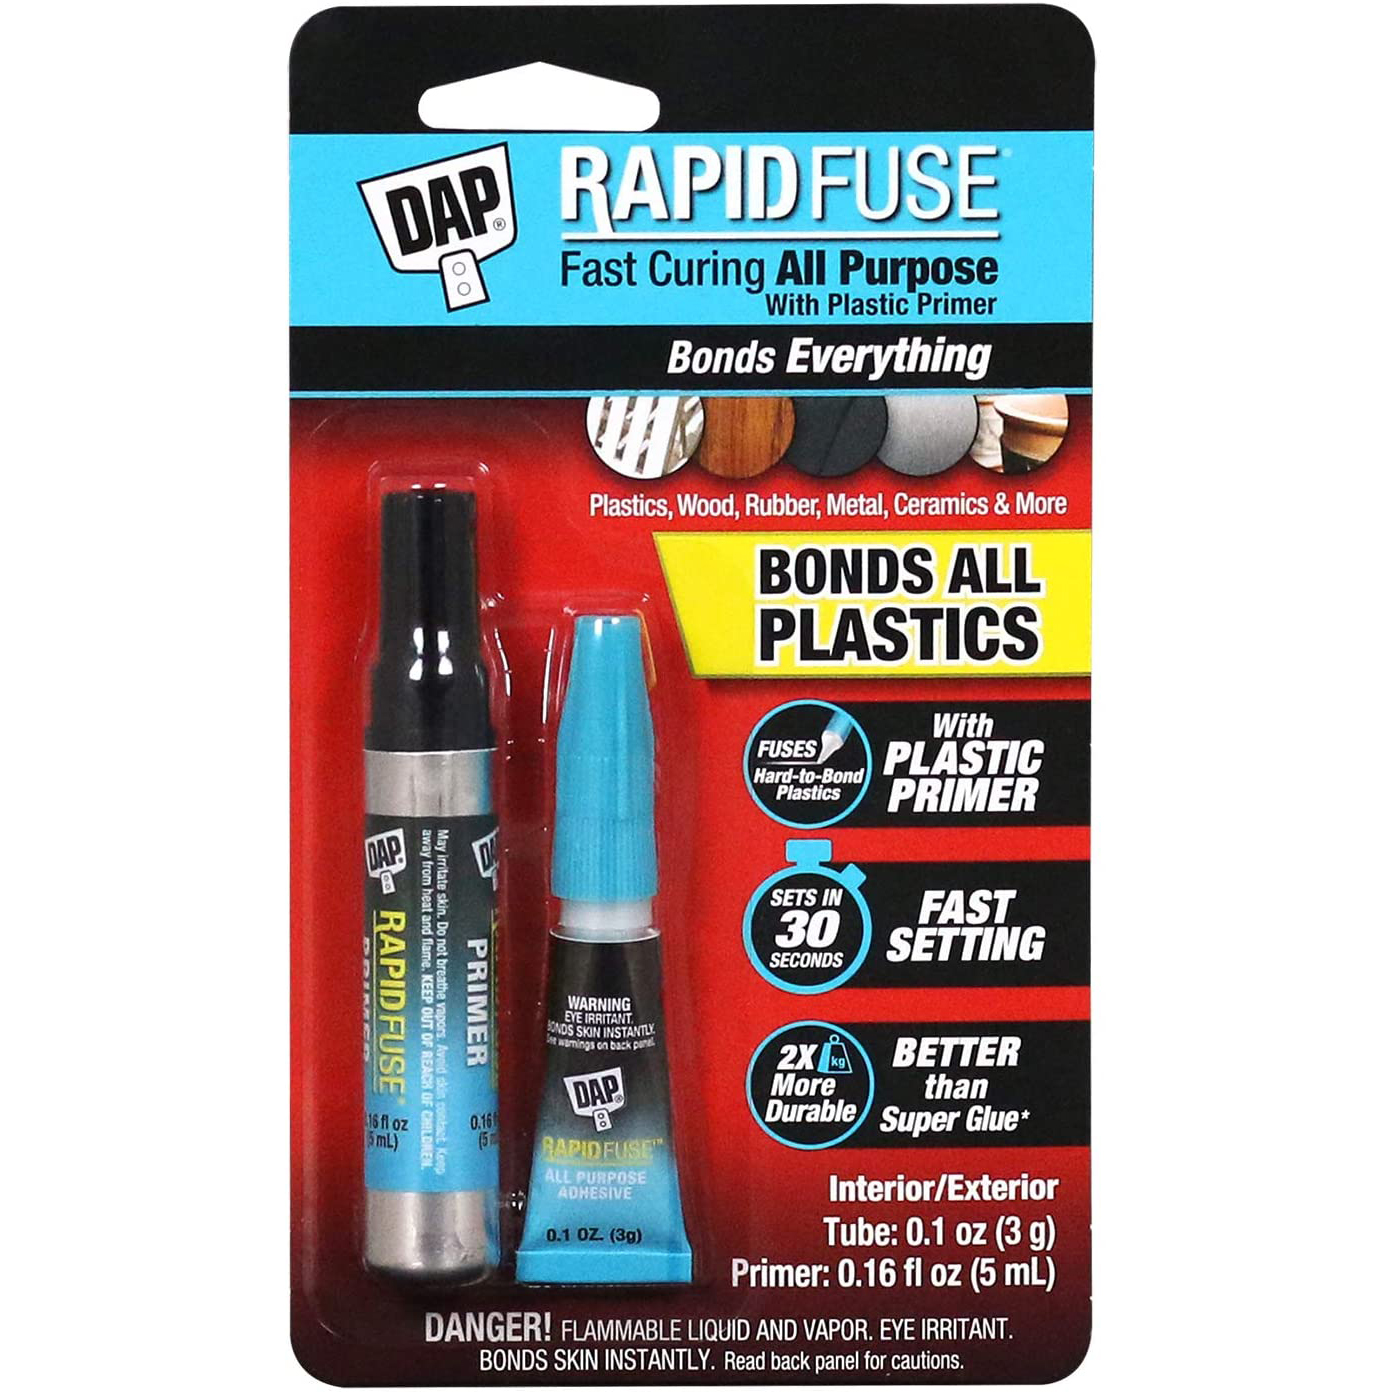 DAP RAPIDFUSE KIT Plastic Primer Adhesive Kit